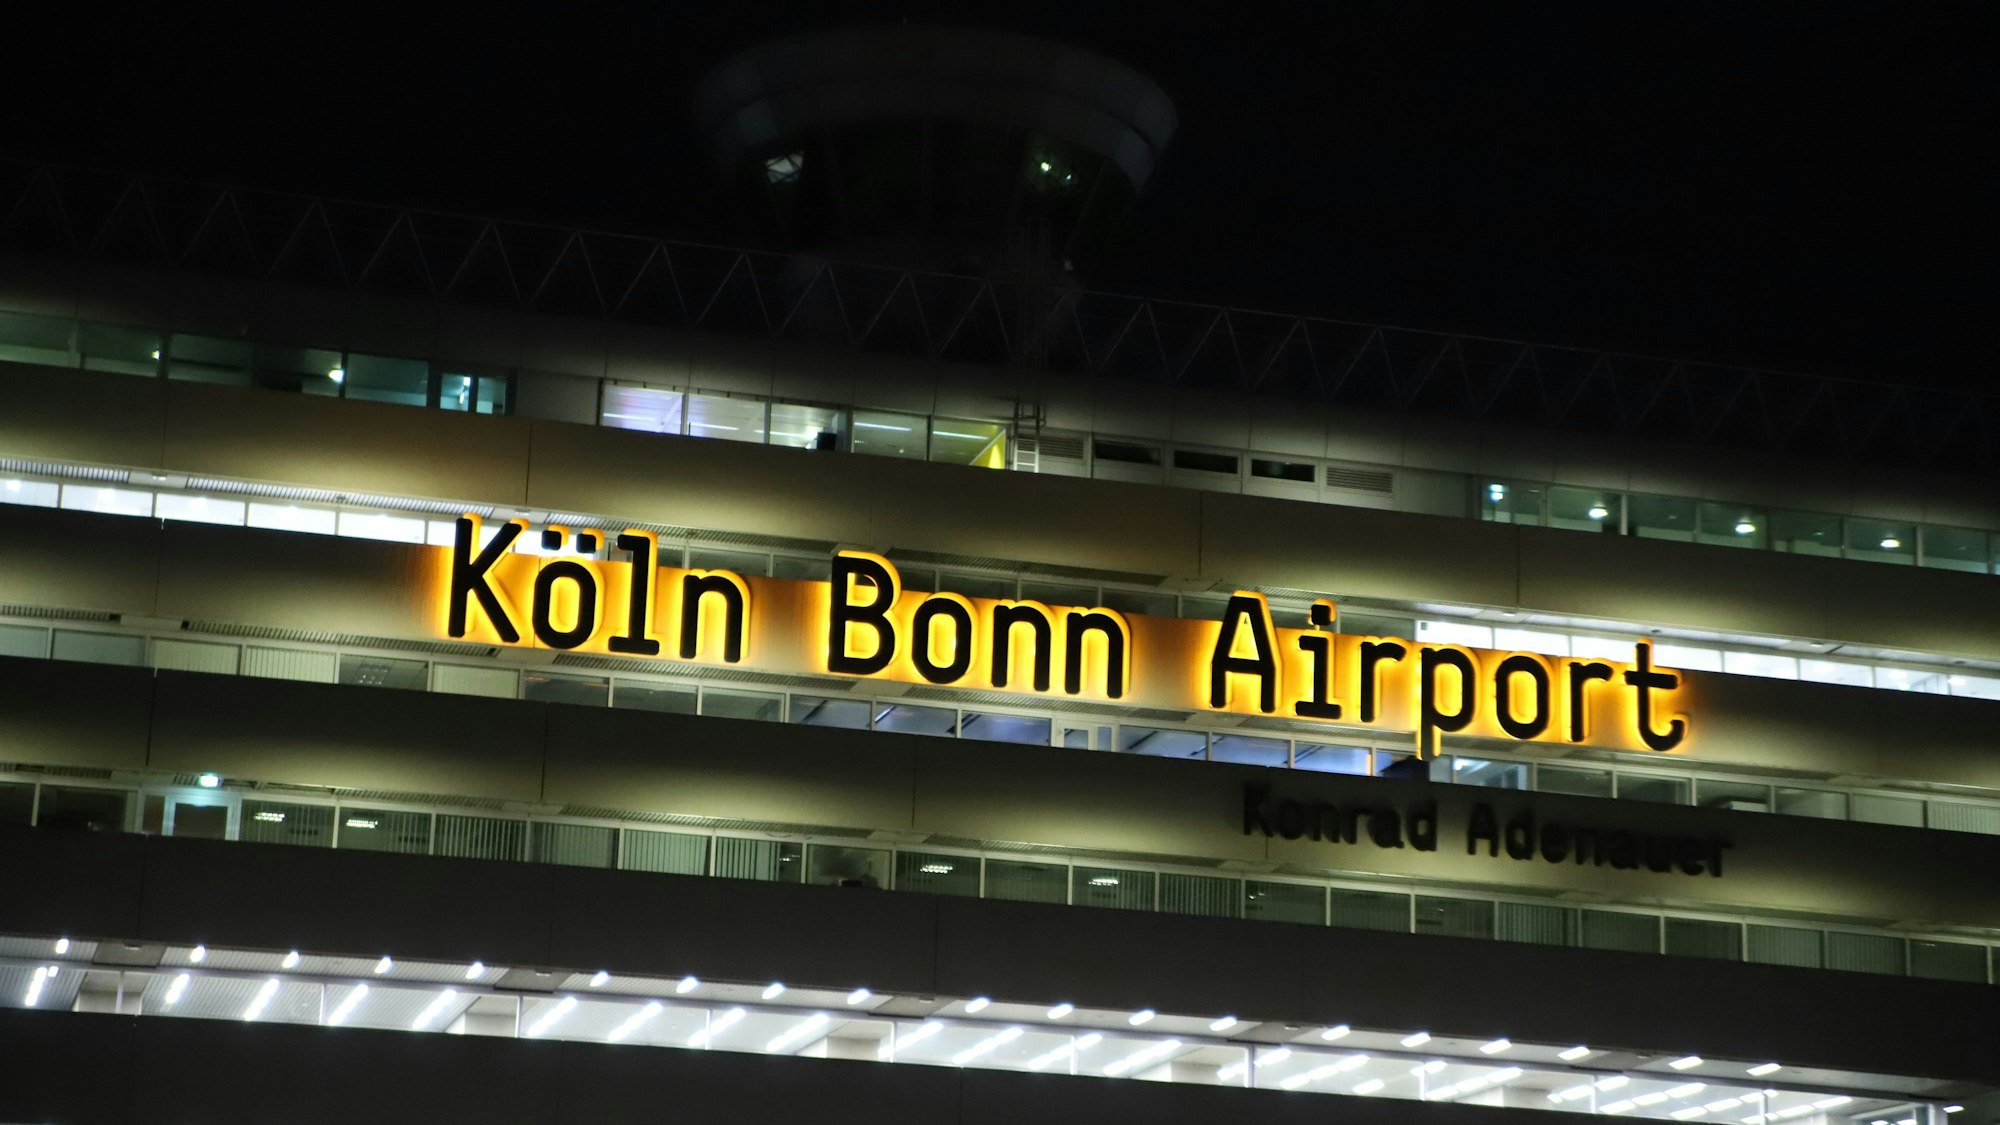 Am Flughafen Köln/Bonn erschnüffelten Drogenspürhunde große Mengen Marihuana. (Symbolbild)